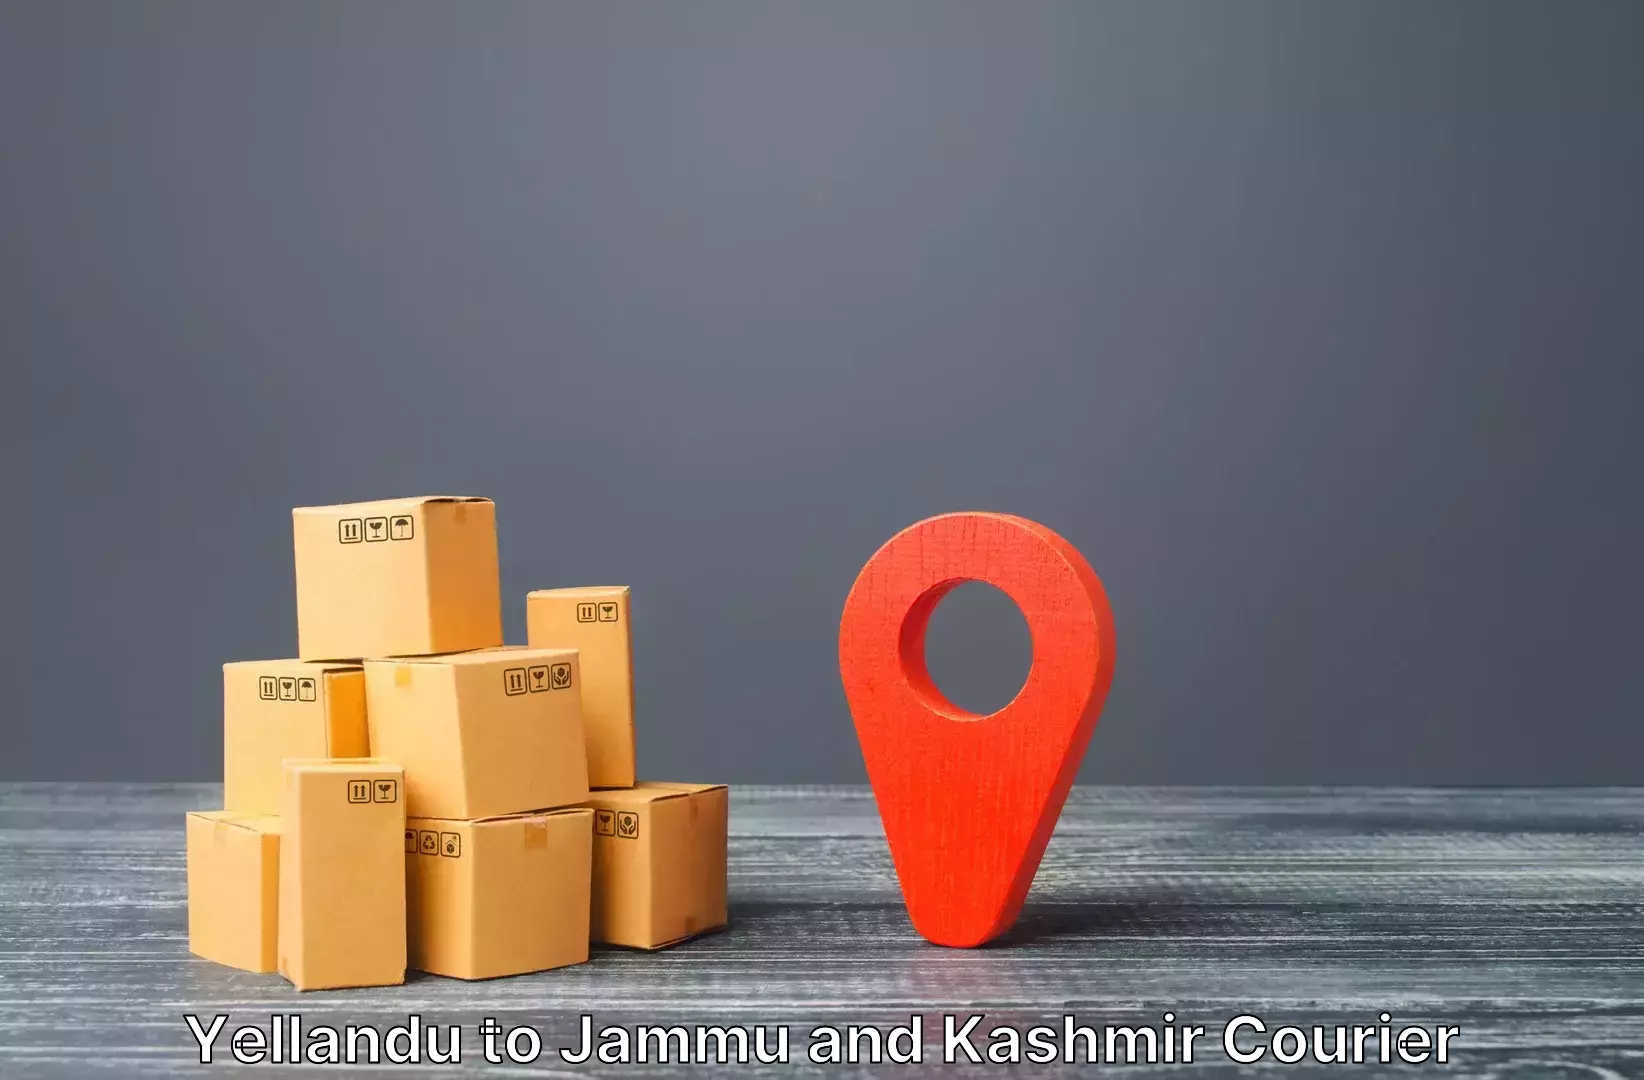 Luggage transport company Yellandu to Jammu and Kashmir